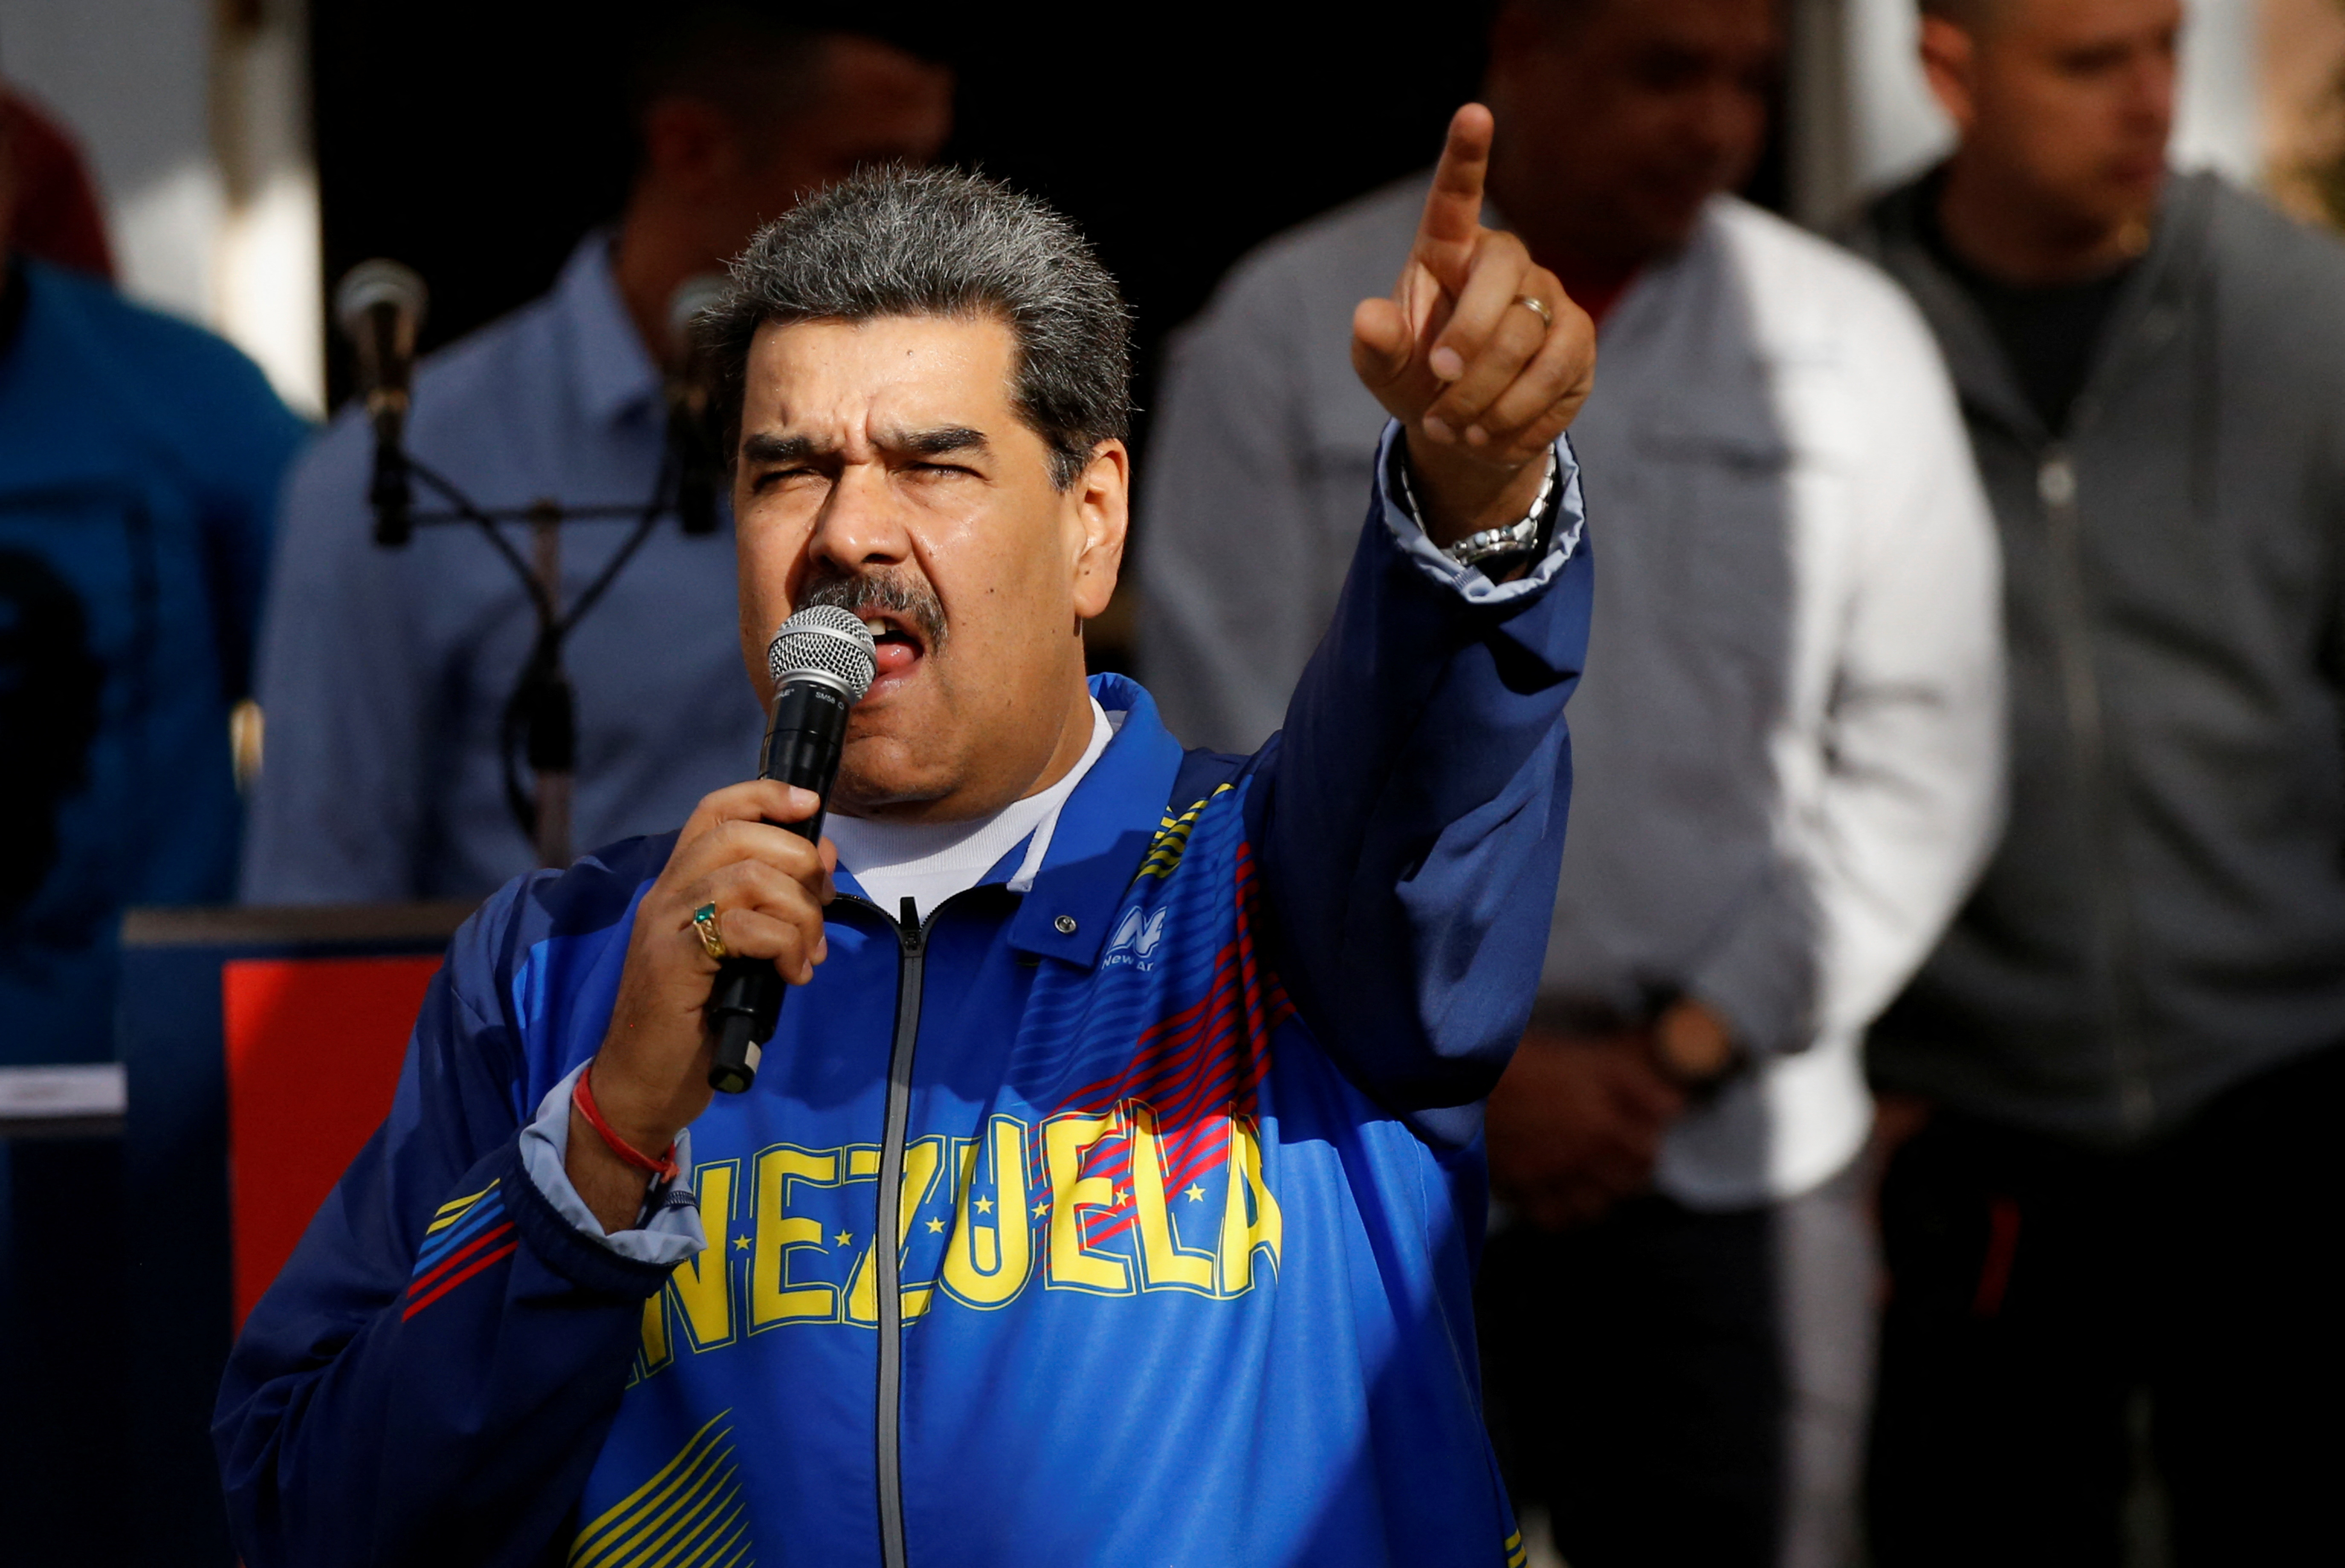 El dictador Nicolás Maduro lanzó una purga tras la renuncia del ministro de Petróleo y los rumores de un complot: “Vamos a limpiar Pdvsa”